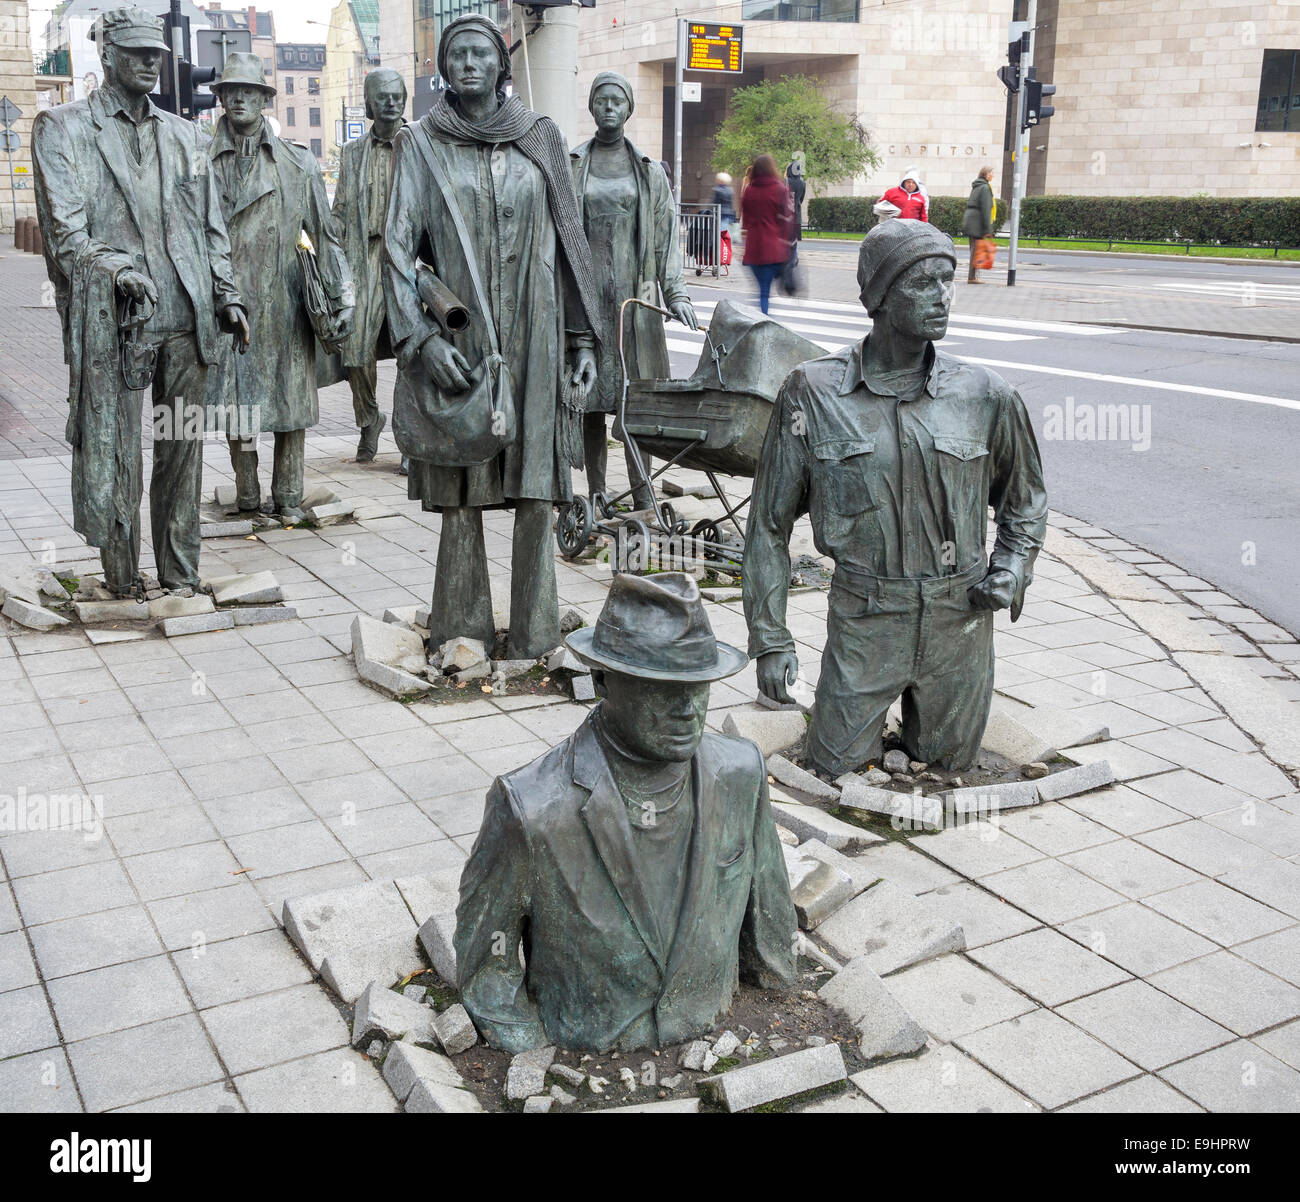 Monumento a los peatones anónimos por Jerzy Kalina, Wroclaw, Polonia Foto de stock